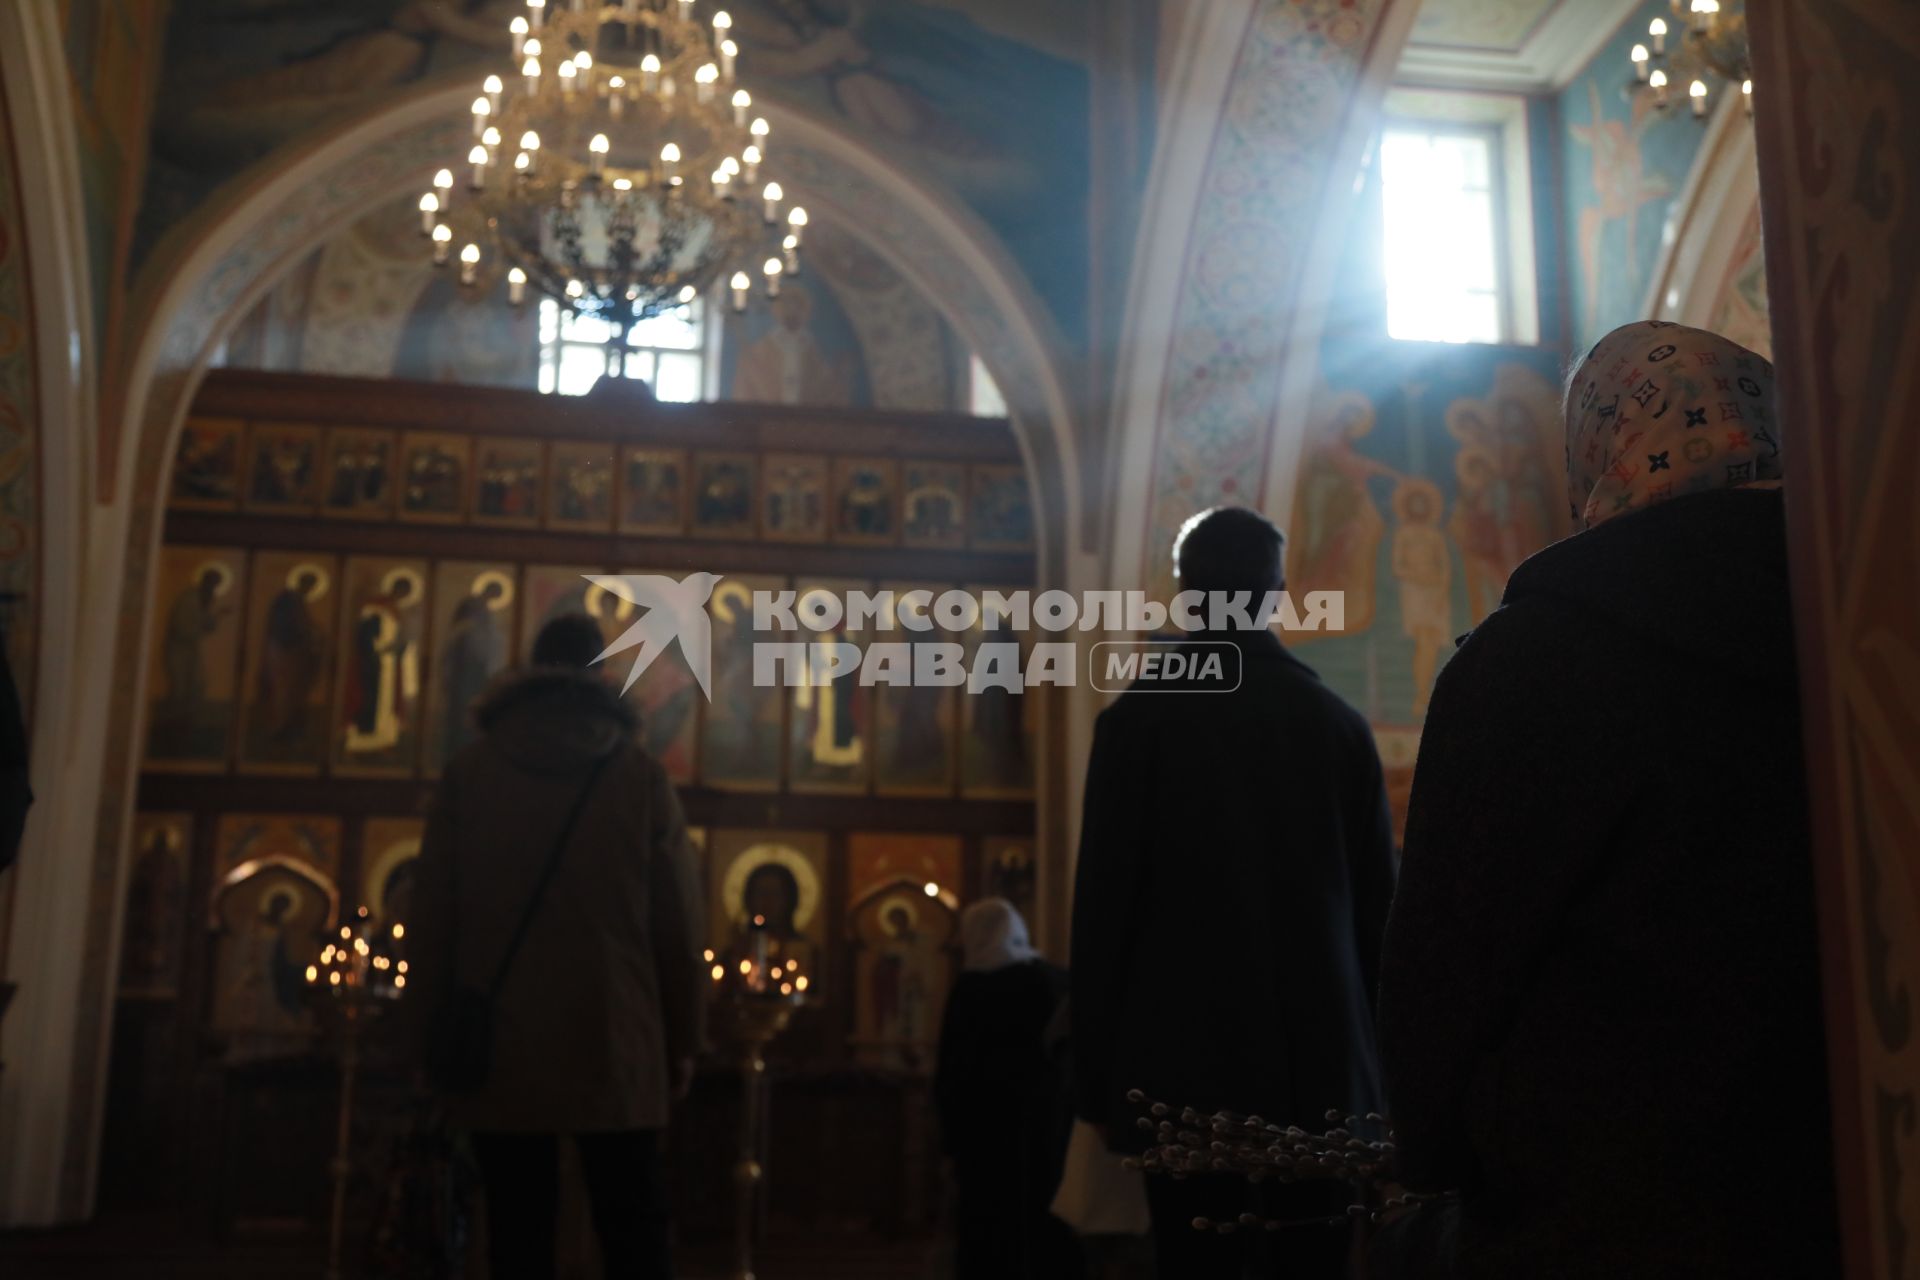 Красноярск. Верующие в Вербное воскресенье на службе в церкви.